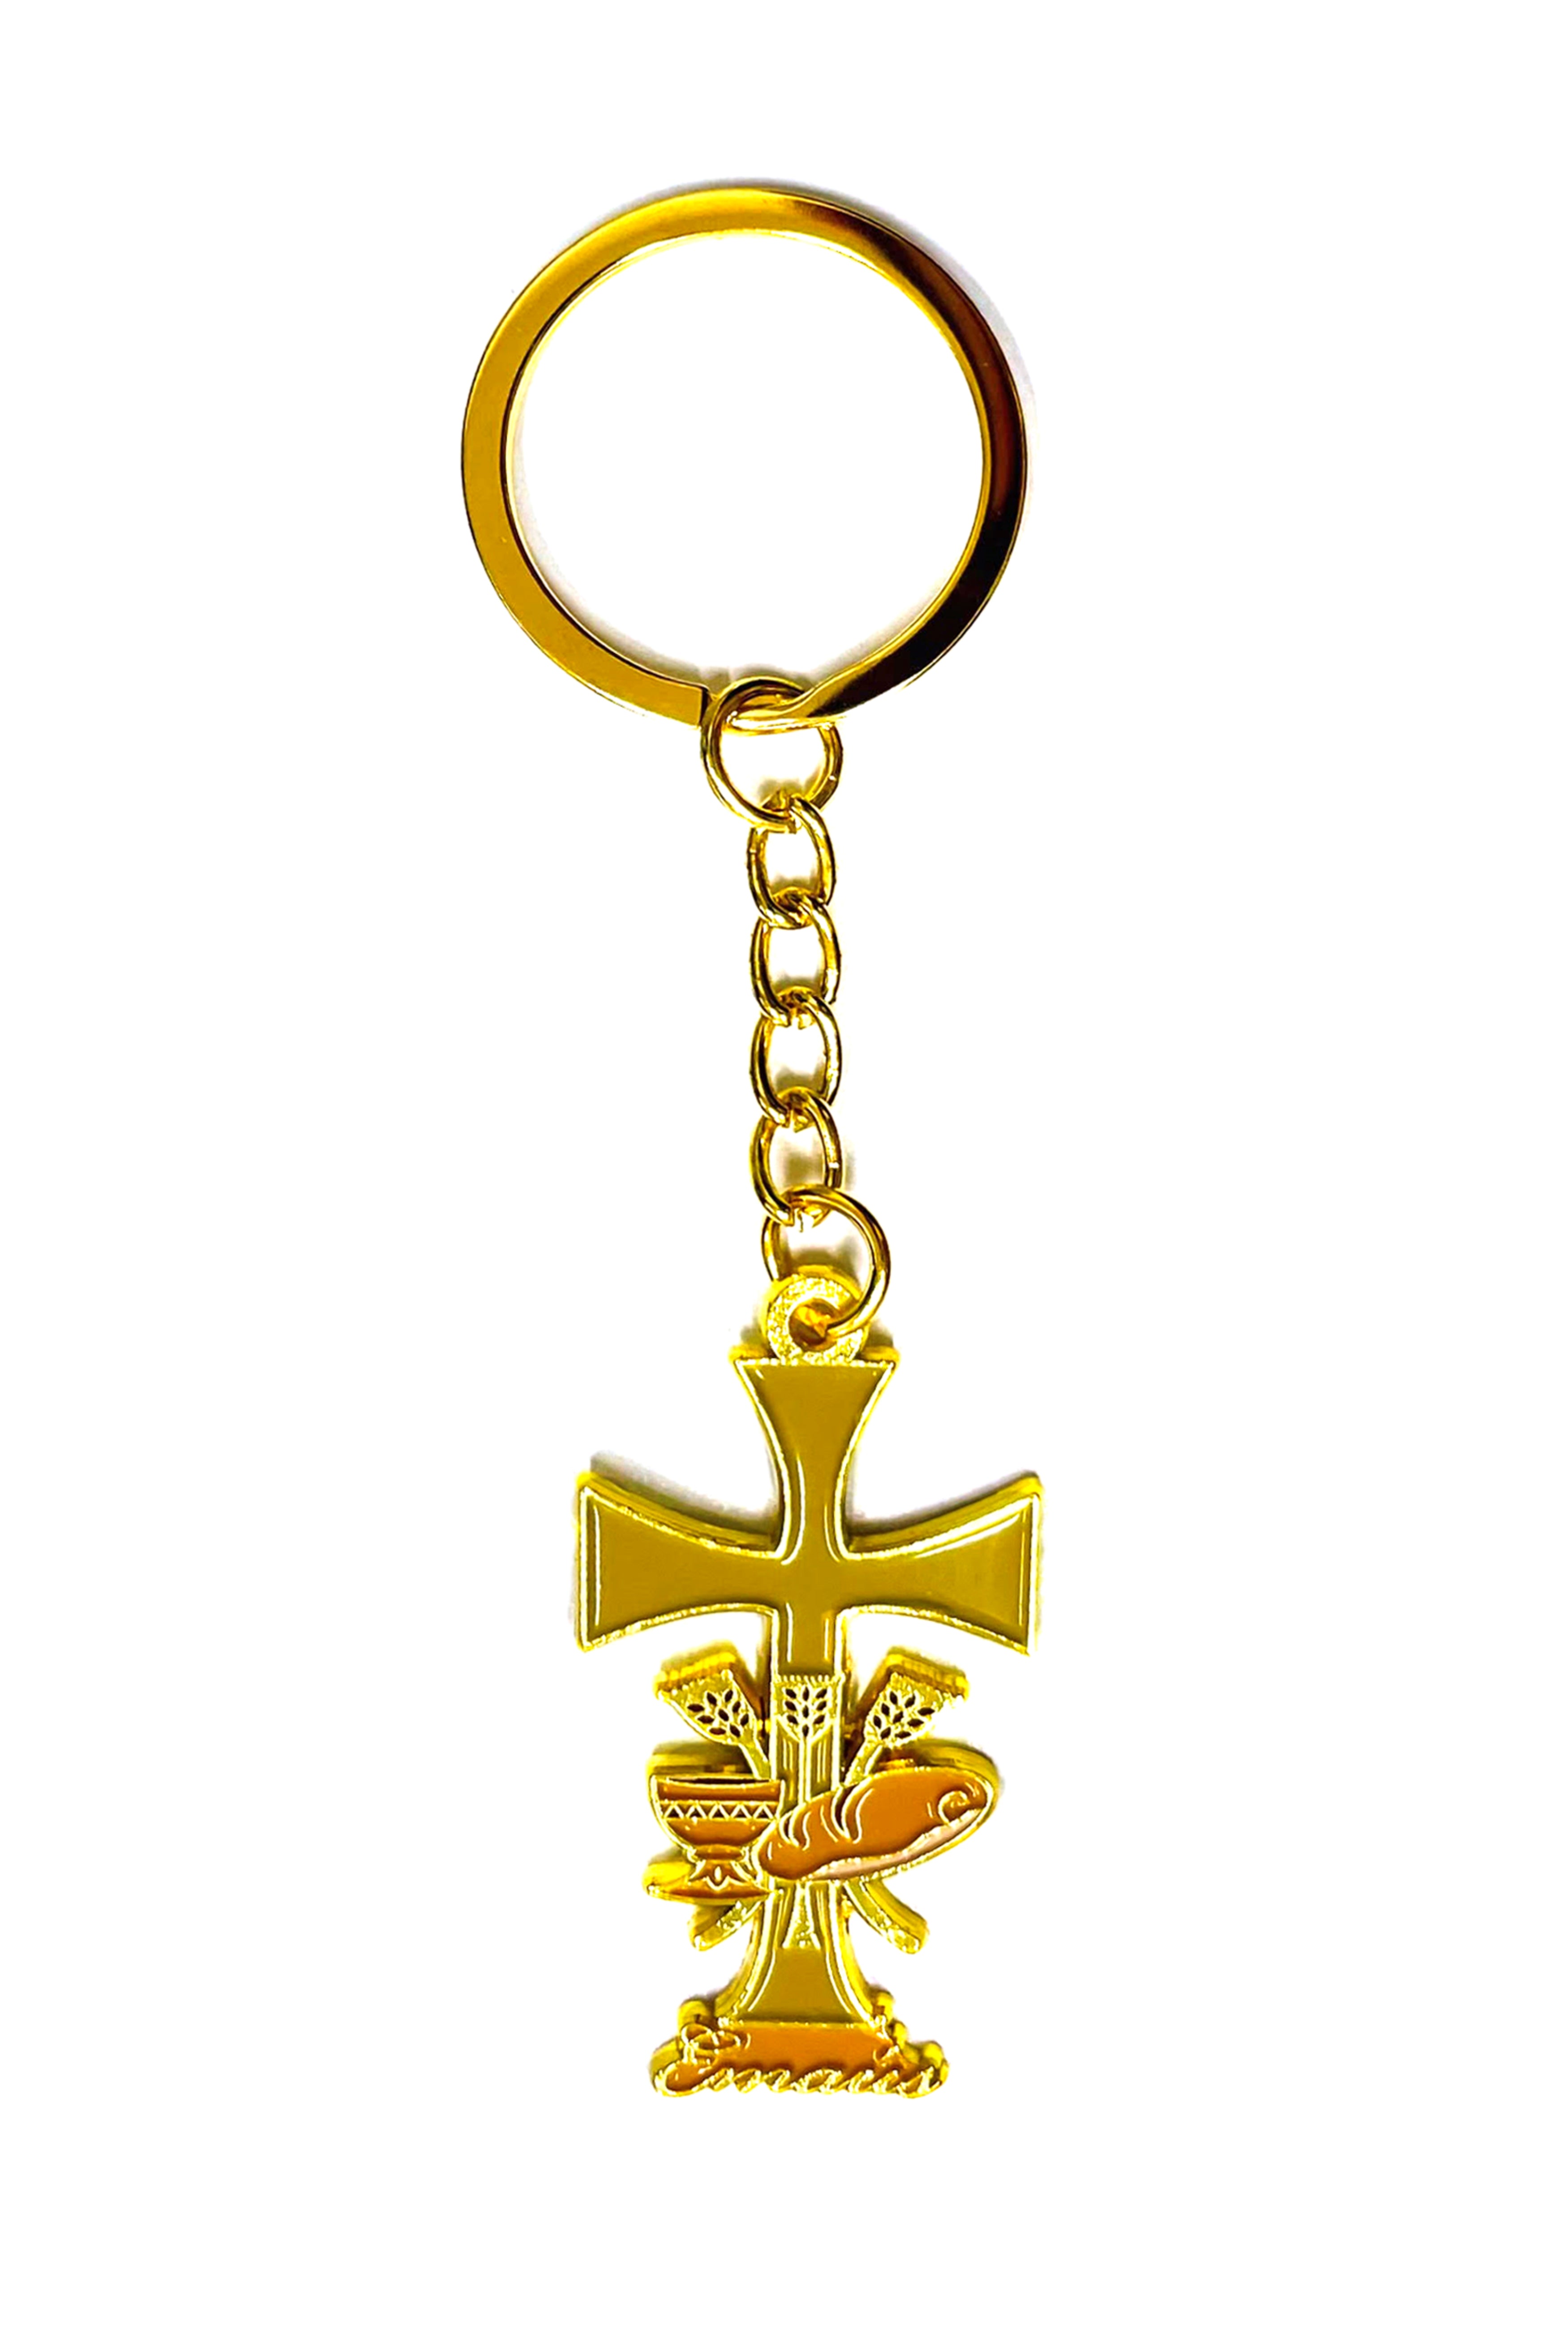 Emmaus yellow keychain special for retreats made of golden metal - Llavero de Emaús amarillo especial para retiros hecho en metal dorado